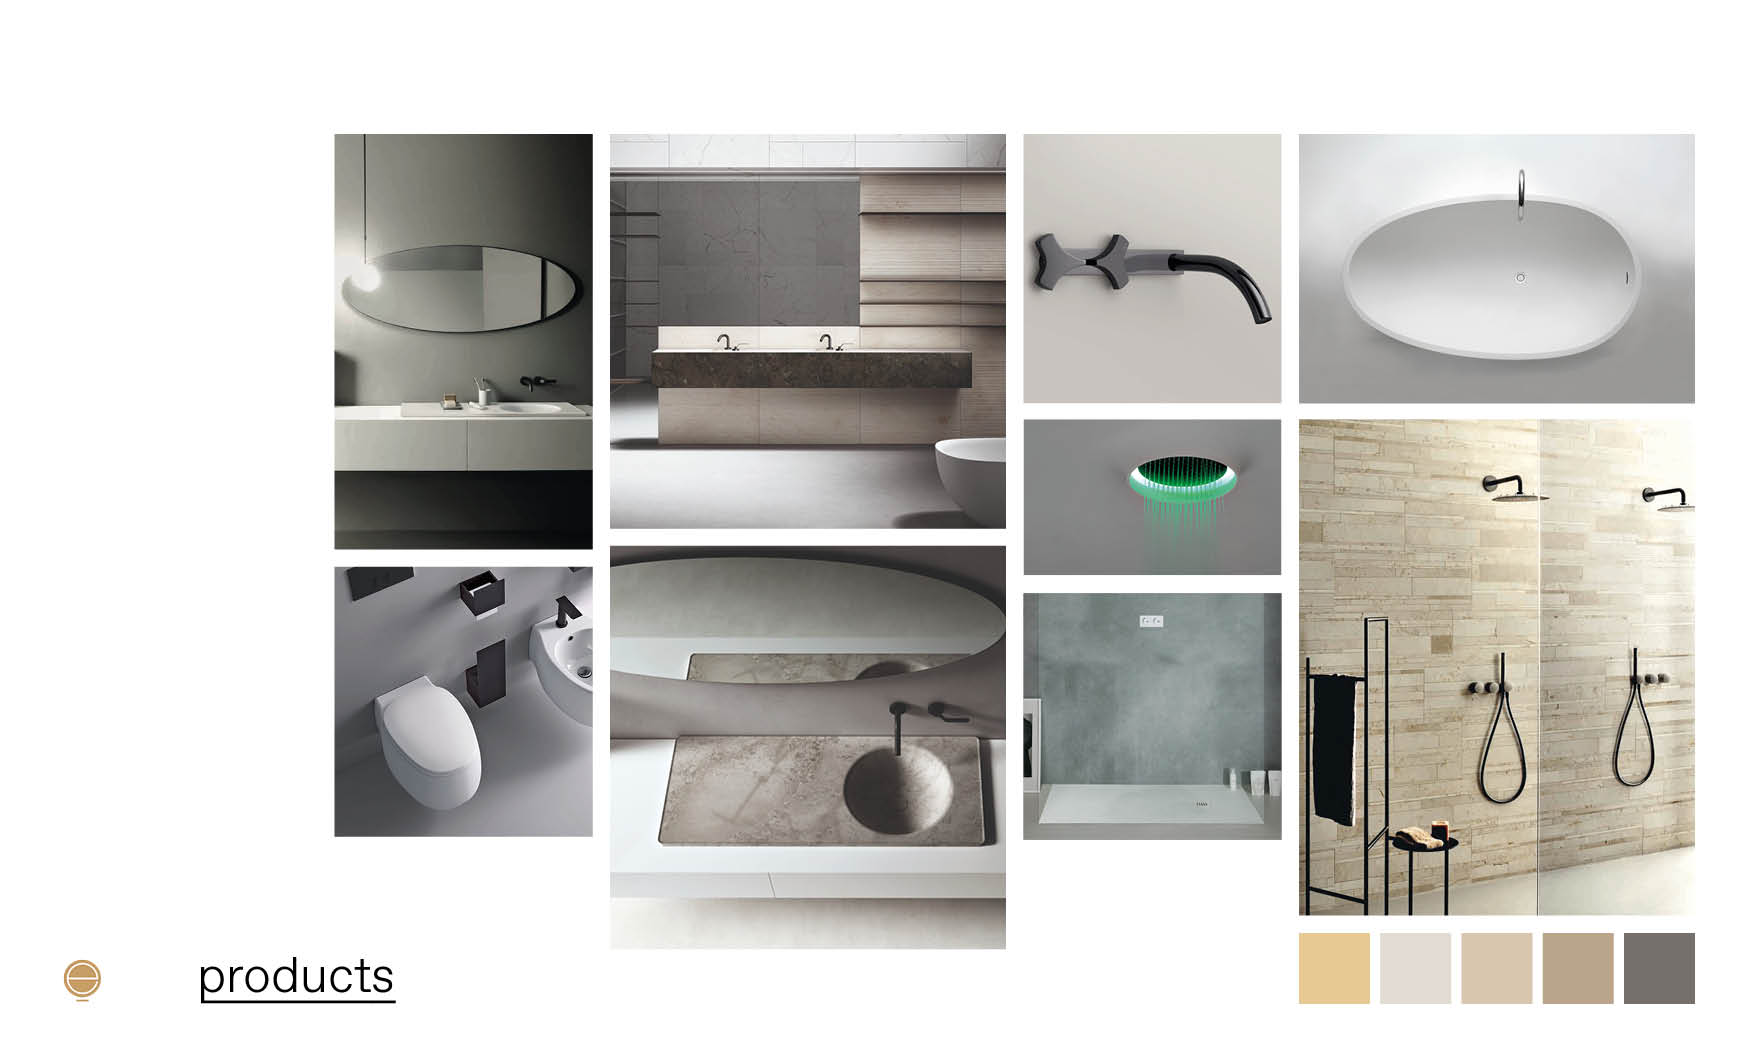 Contemporary Italian bathroom furniture moodboard design by Esperiri Milano